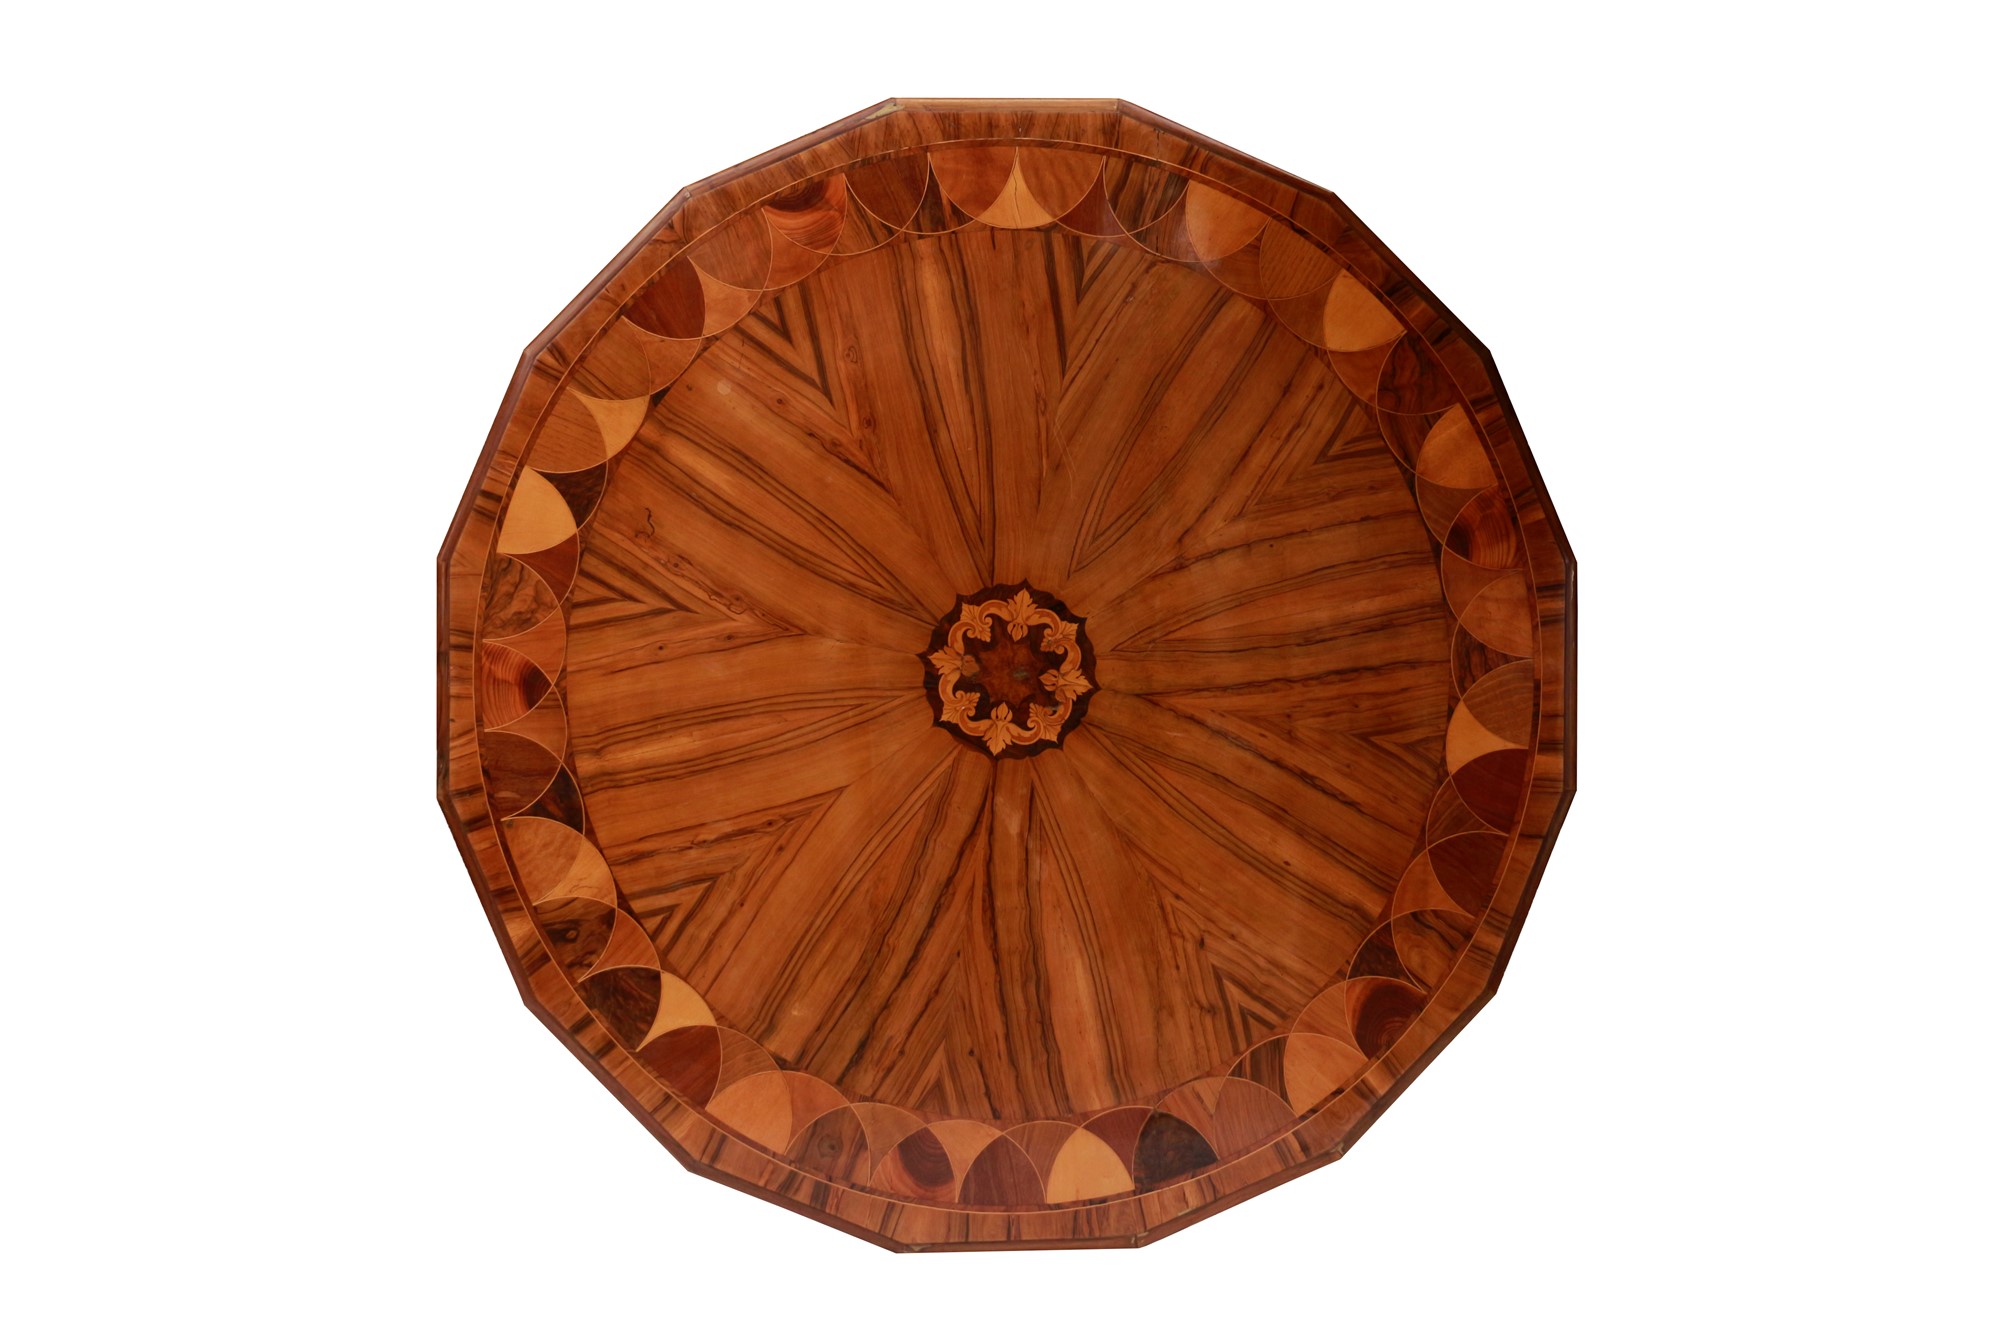 Grande tavolo con piano esadecagonale a becco di civetta lastronato e intarsiato in varie essenze (u - Image 2 of 2